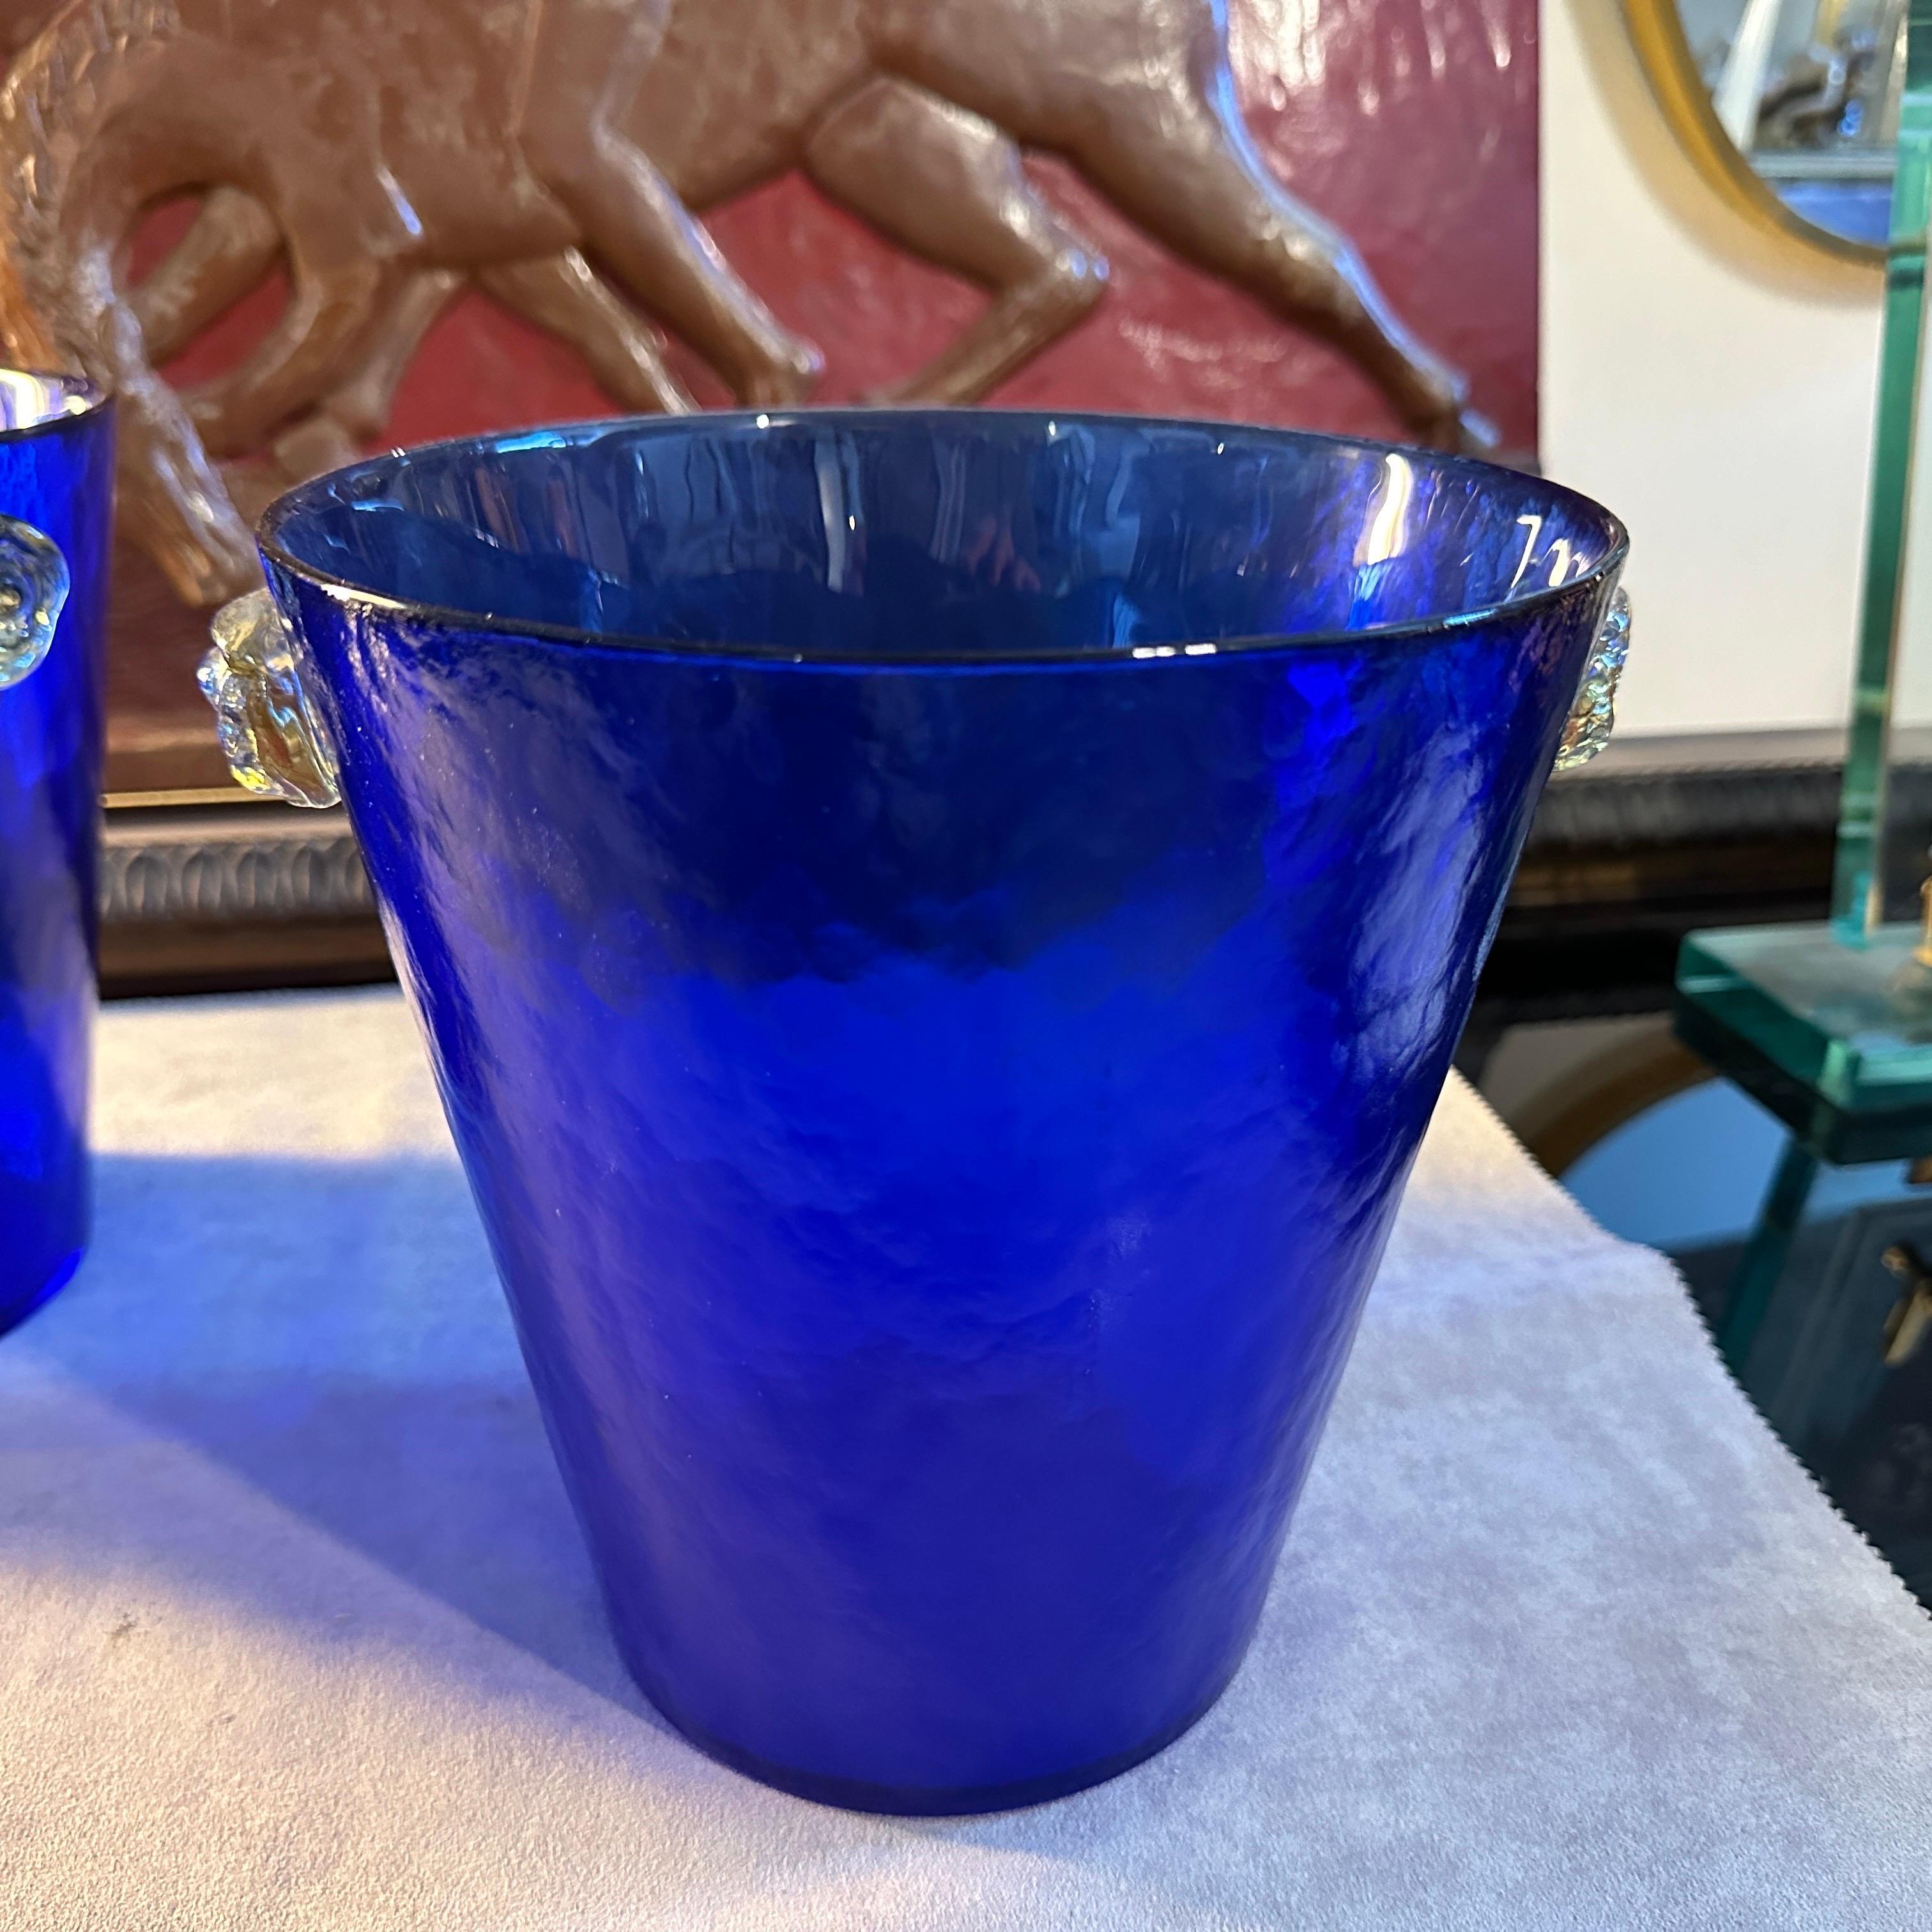 Ein modernistisches blaues und gelbes Muranoglas Paar Weinkühler entworfen und hergestellt in Murano in den achtziger Jahren, sind sie auf einer Seite und in perfektem Zustand beschriftet. Die Battuto-Technik des Weinkühlers wurde lange Zeit von